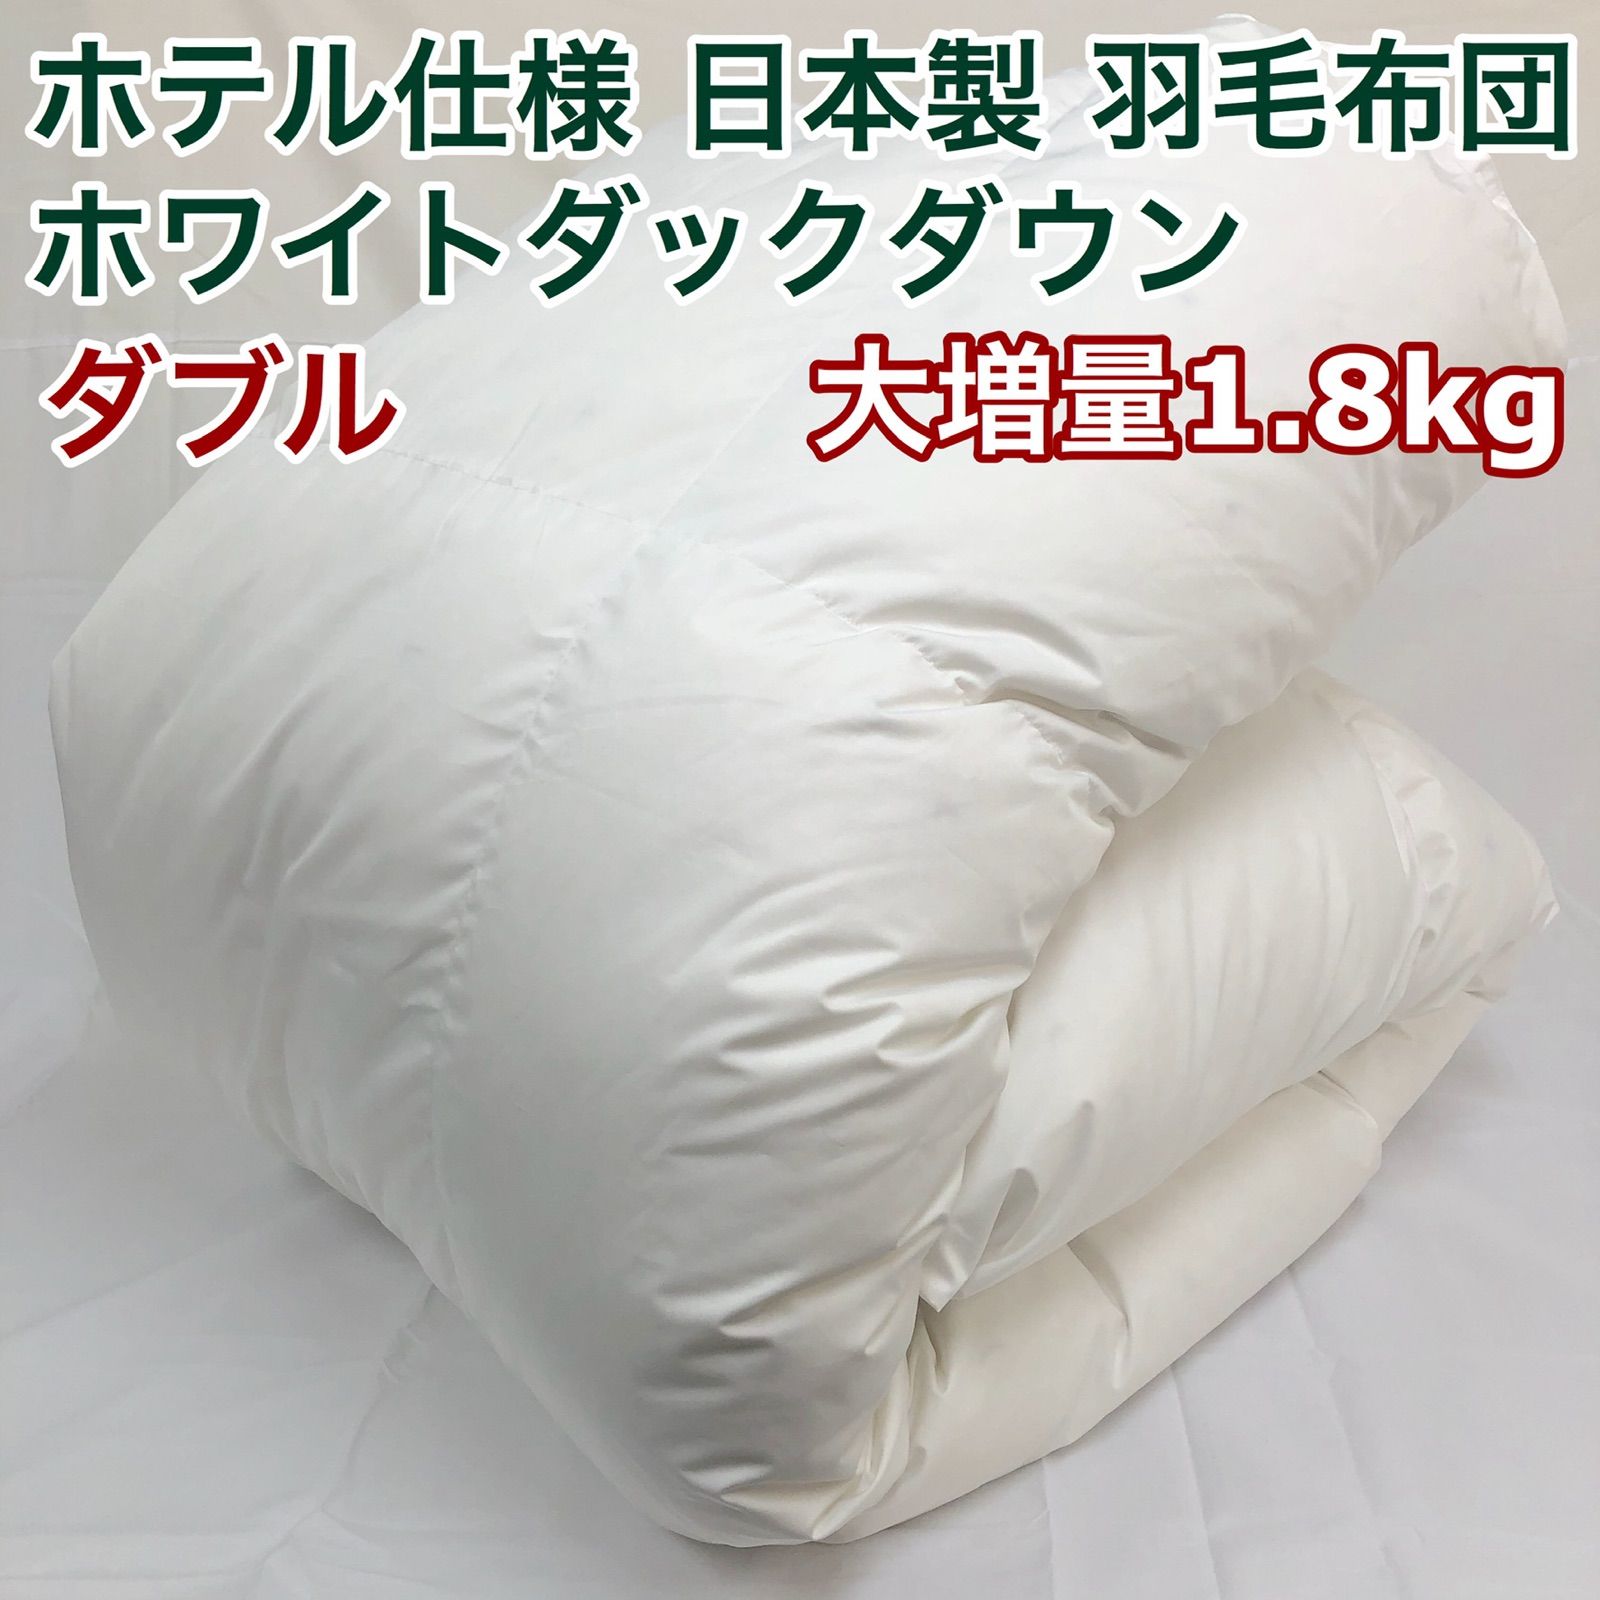 2枚合わせ 羽毛布団 ダブル ニューゴールド 白色 日本製 190×210cm-